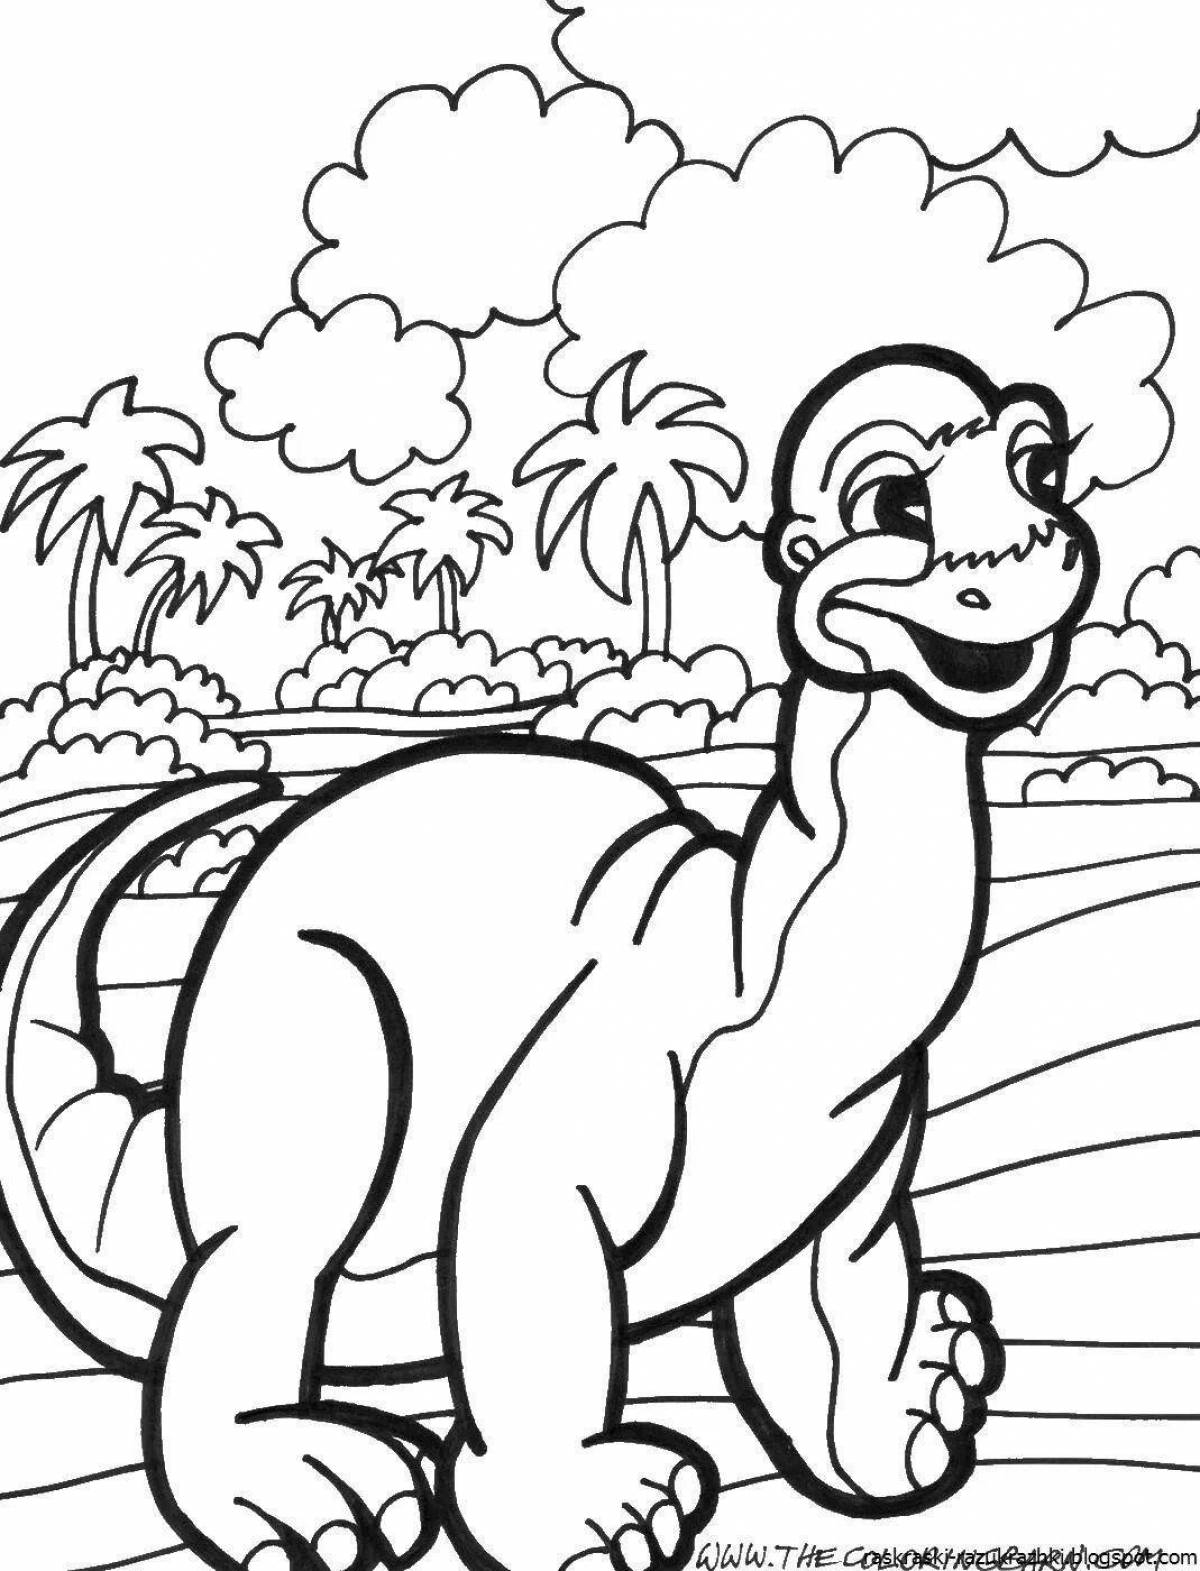 Творческая раскраска динозавров для мальчиков 5-7 лет